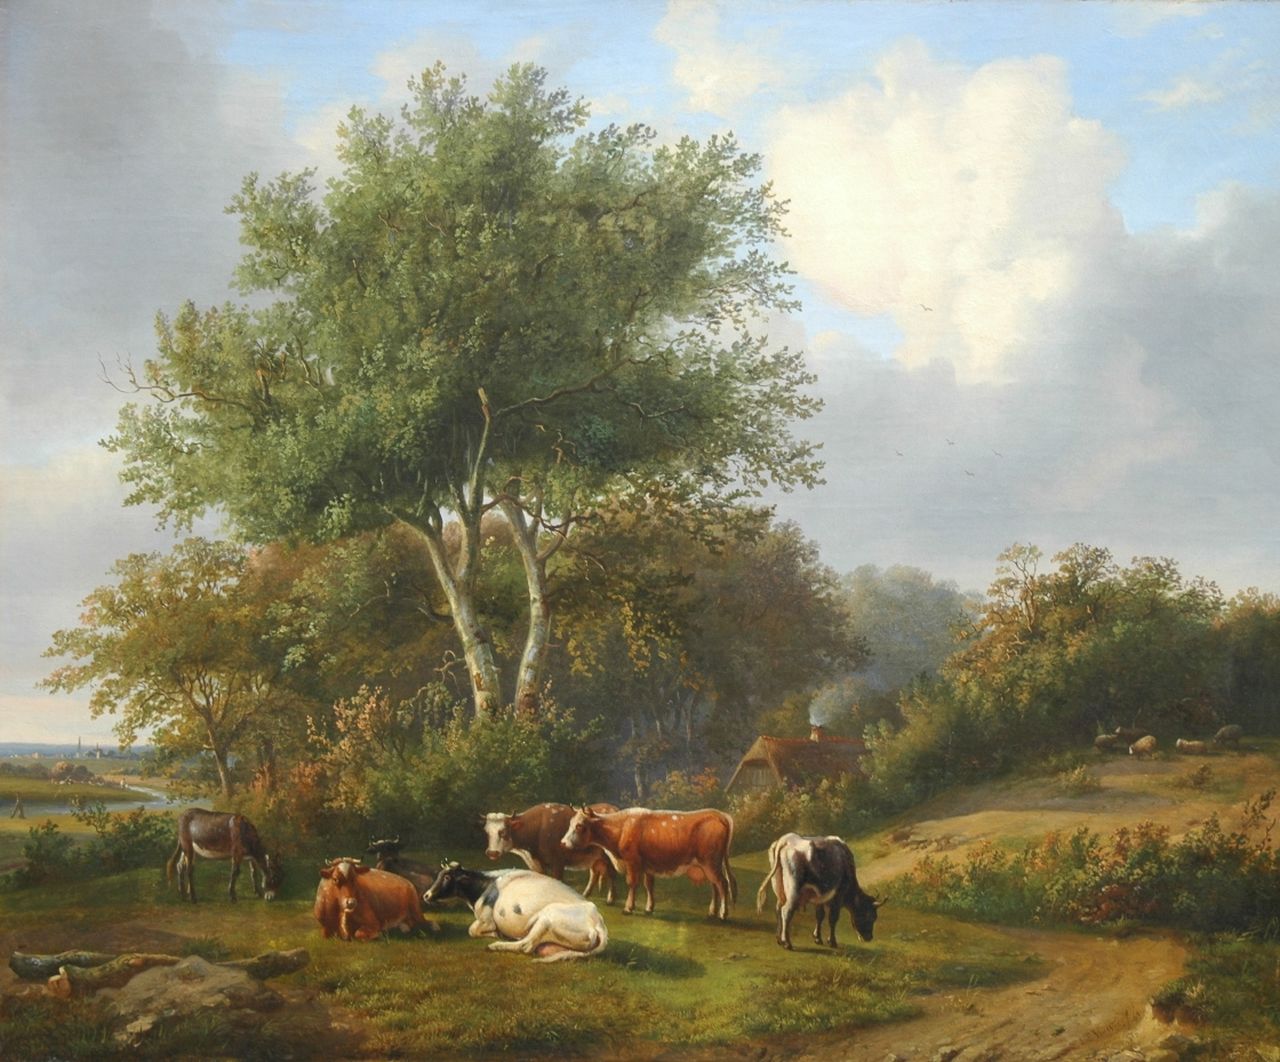 Verwee L.P.  | Louis Pierre Verwee, Grazing cattle, Öl auf Leinwand 63,2 x 77,0 cm, signed l.l. und dated 1843